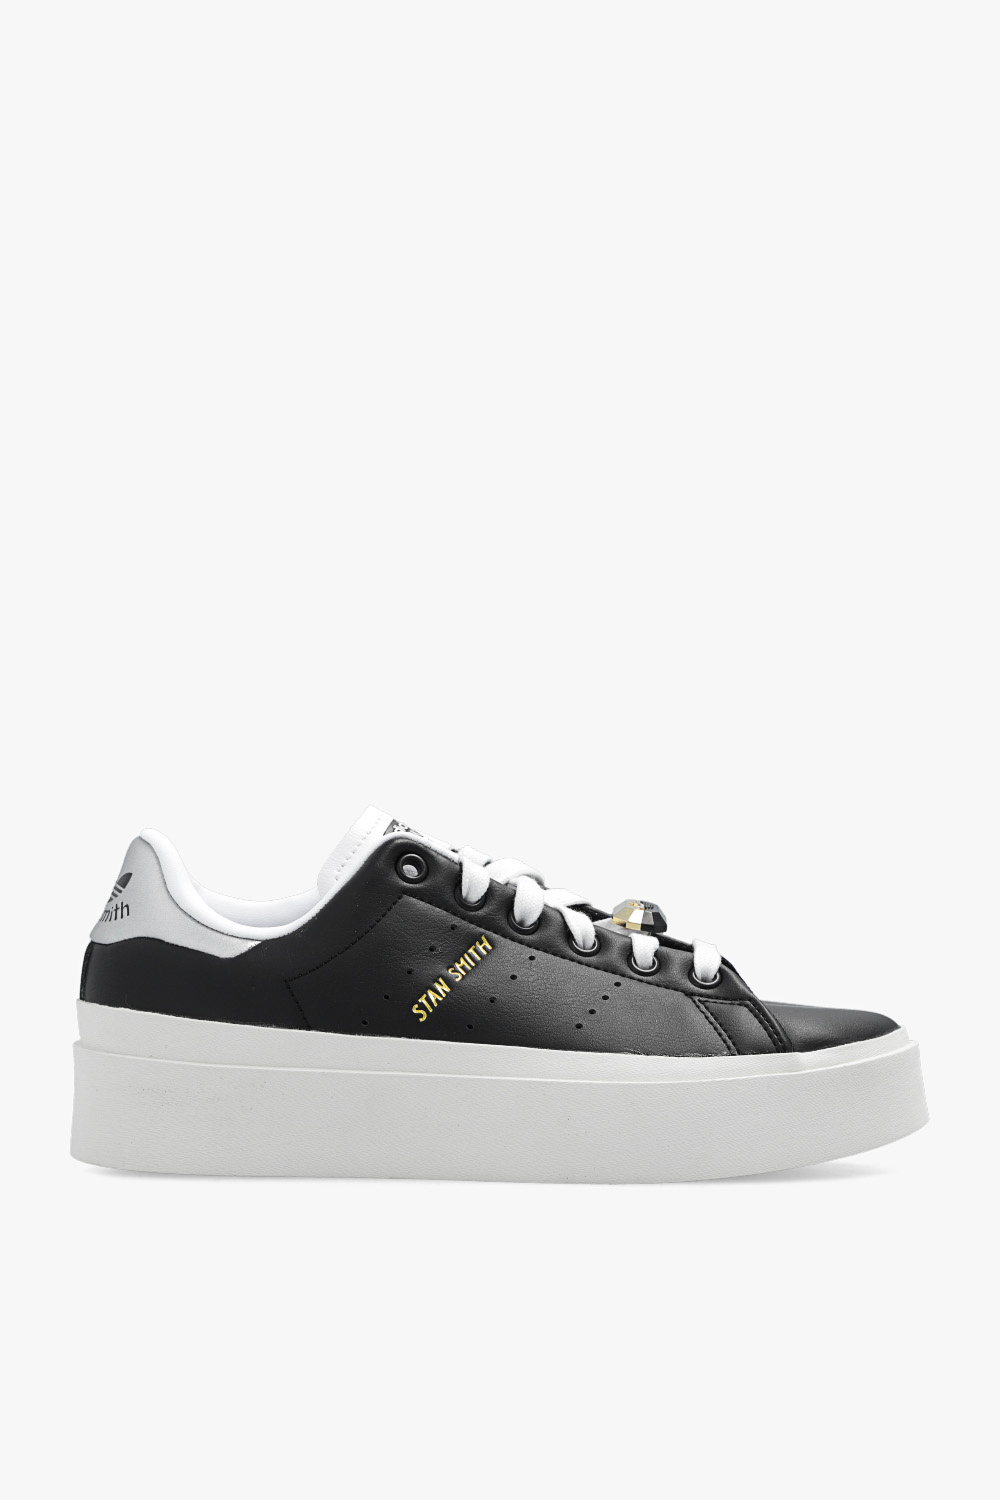 Stan Smith Bonega sneakers ADIDAS Originals - De-iceShops GB - adidas campus shoes navy seal